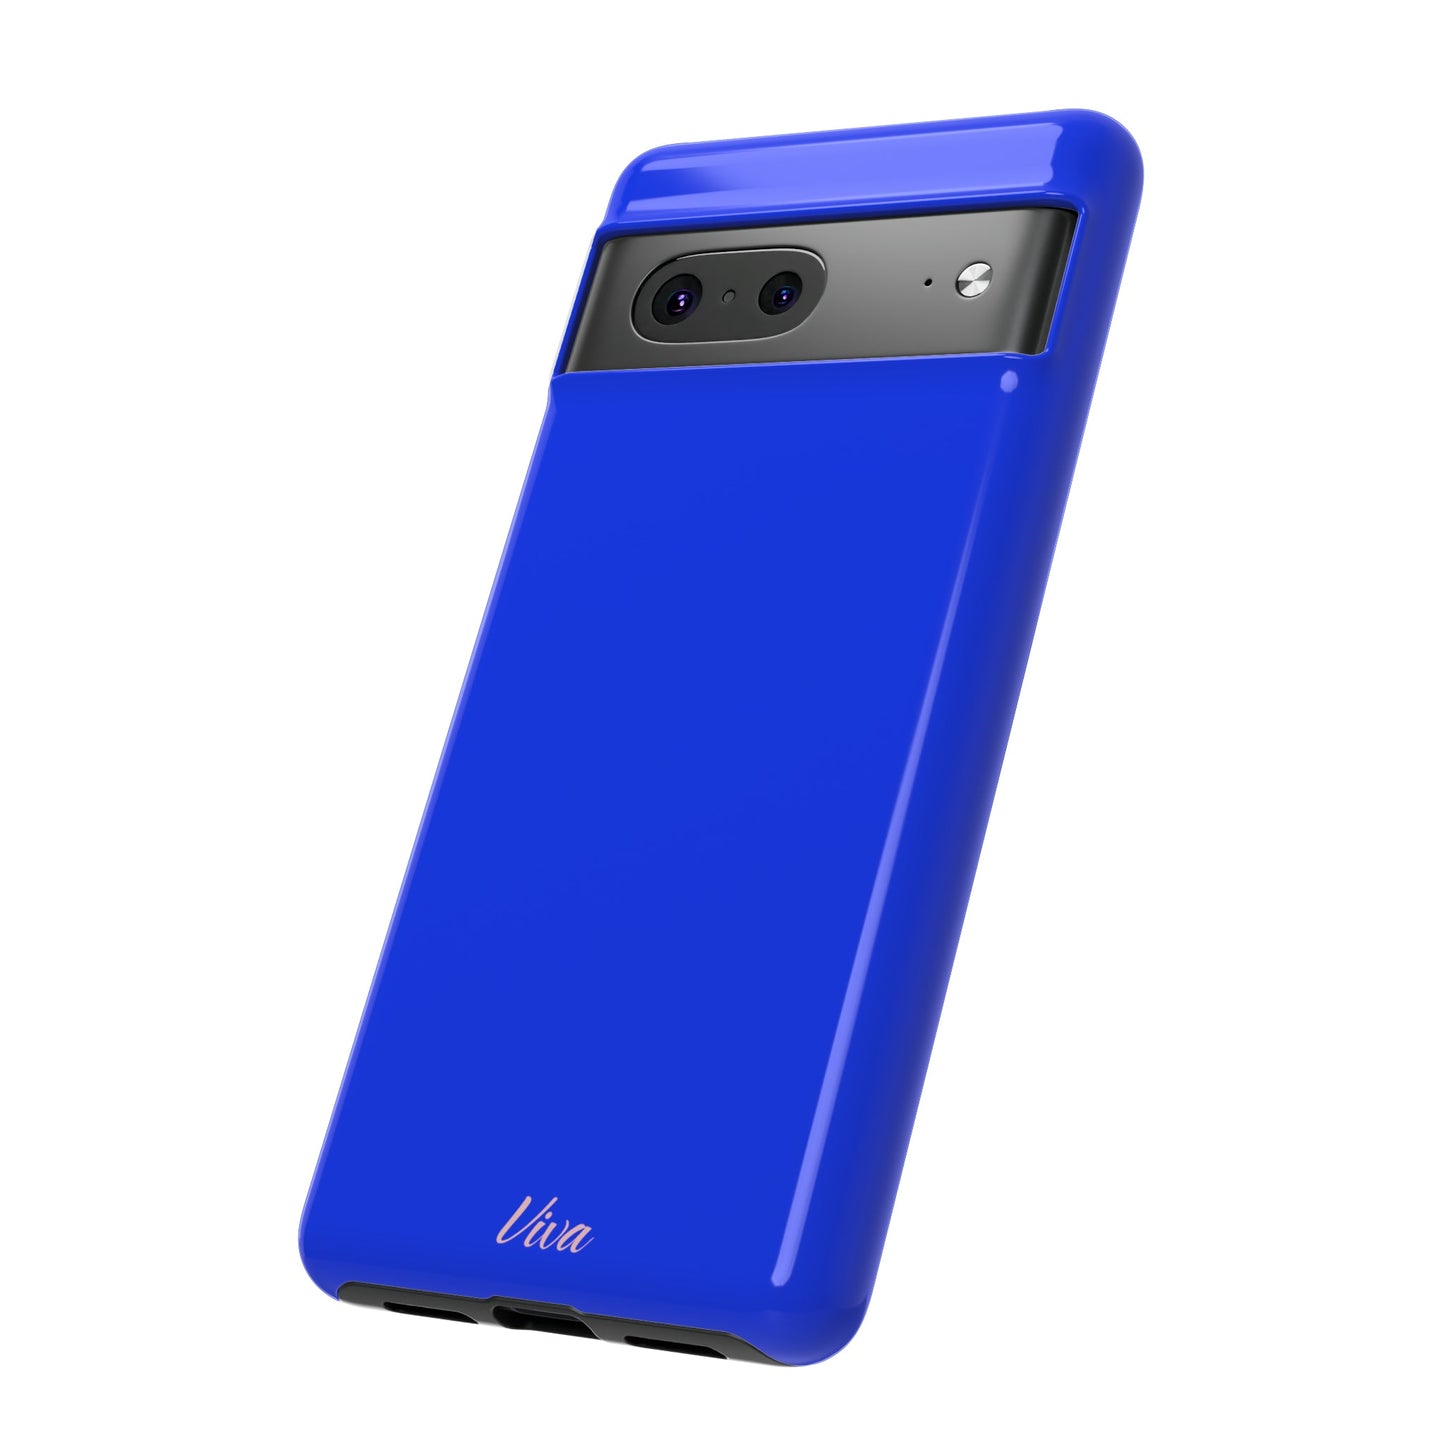 Ultramarine Blue Tough Phone Case